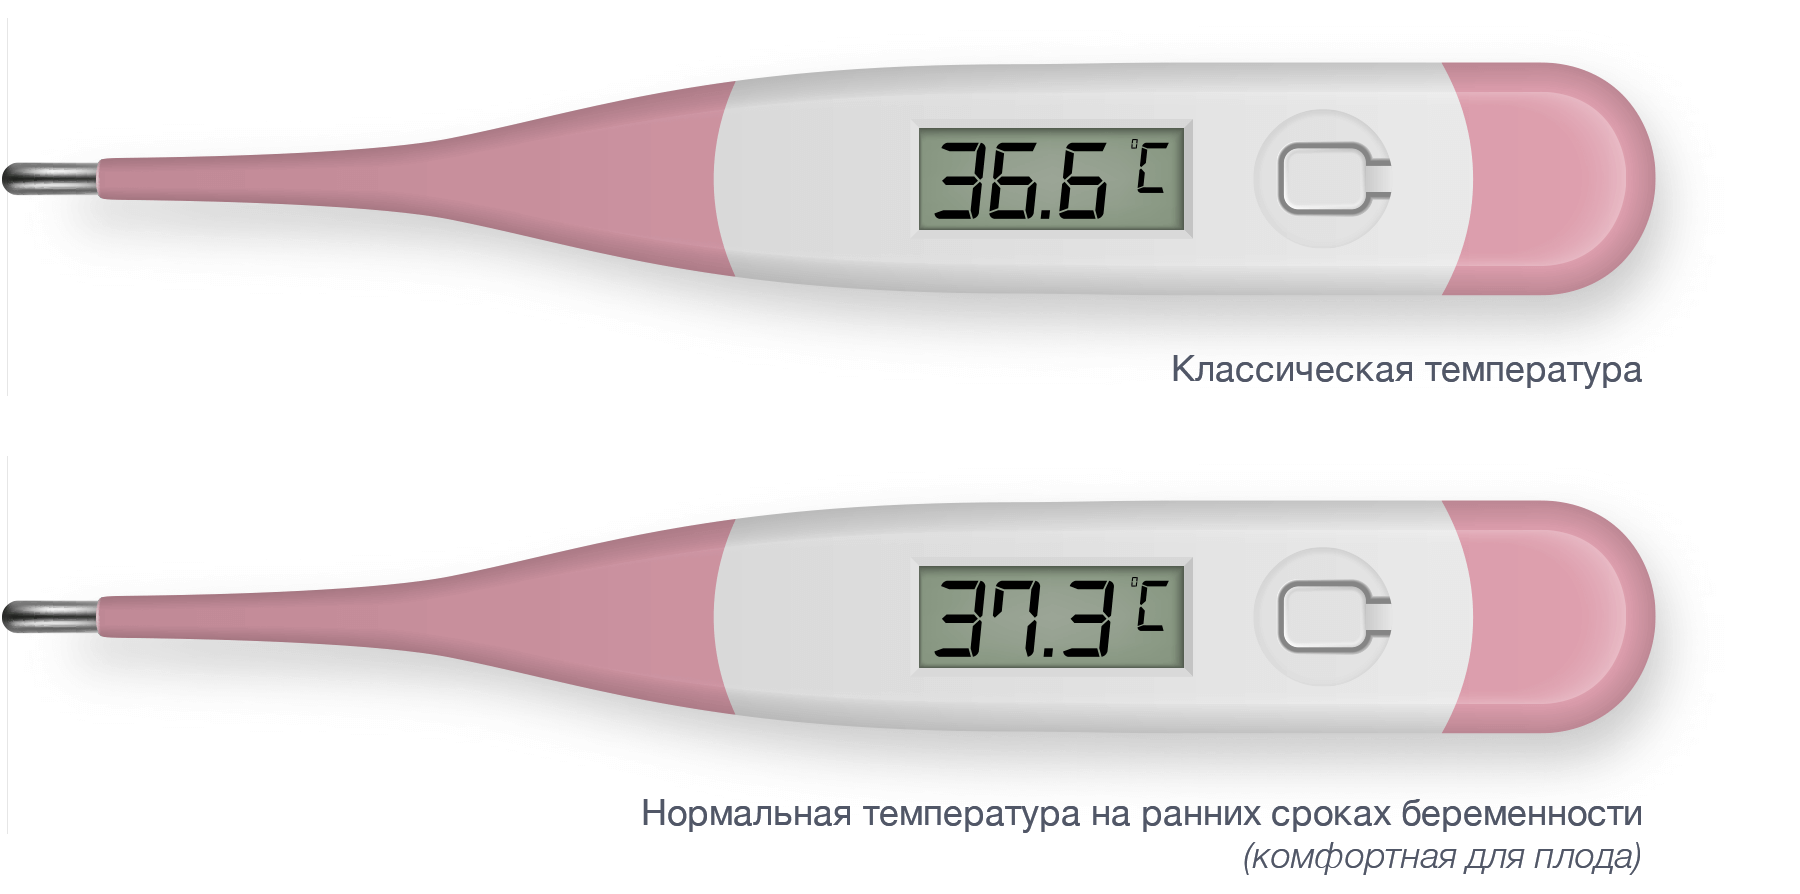 Базальная температура во время беременности